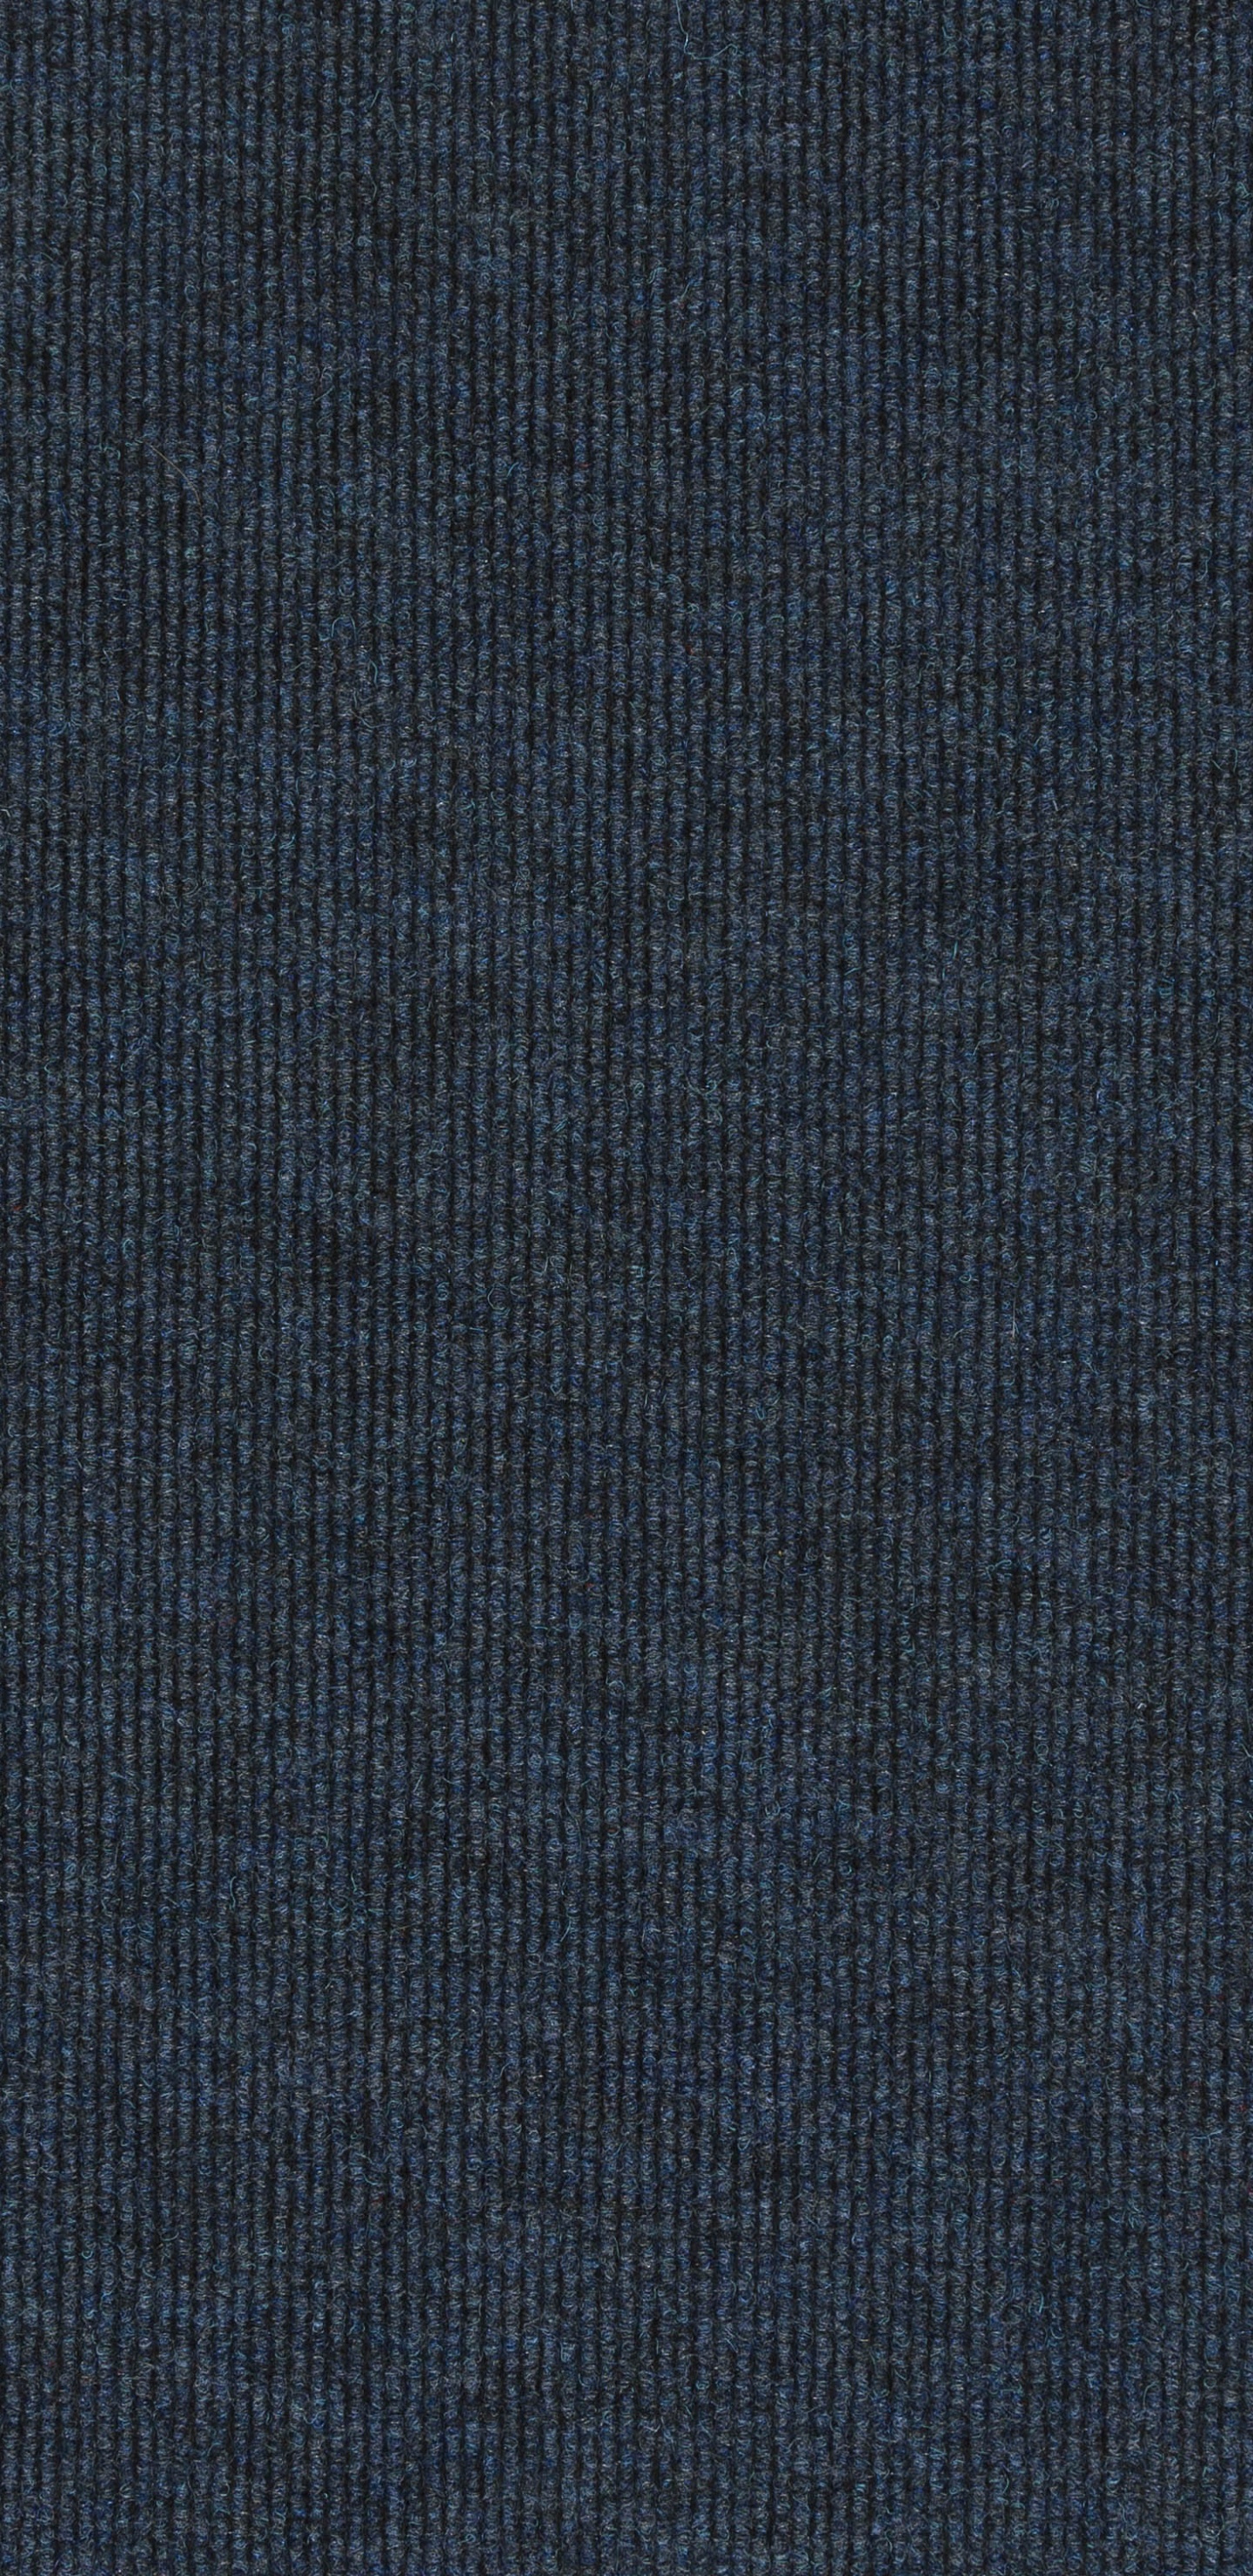 Textile Bleu Sur Fond Noir. Wallpaper in 1440x2960 Resolution